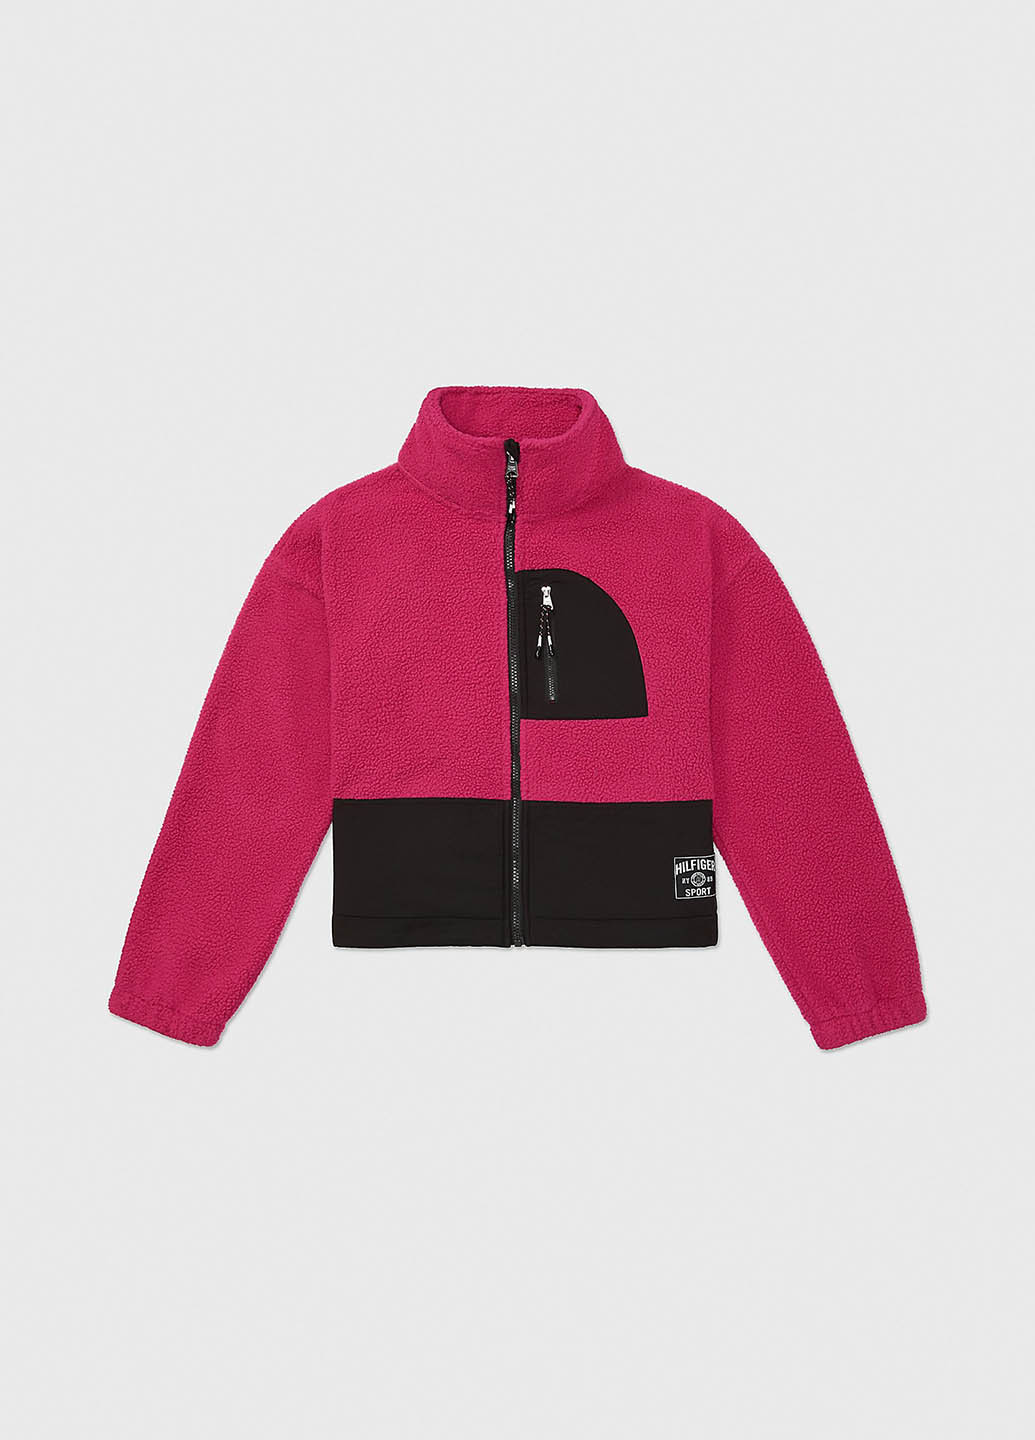 Розовая демисезонная куртка Tommy Hilfiger